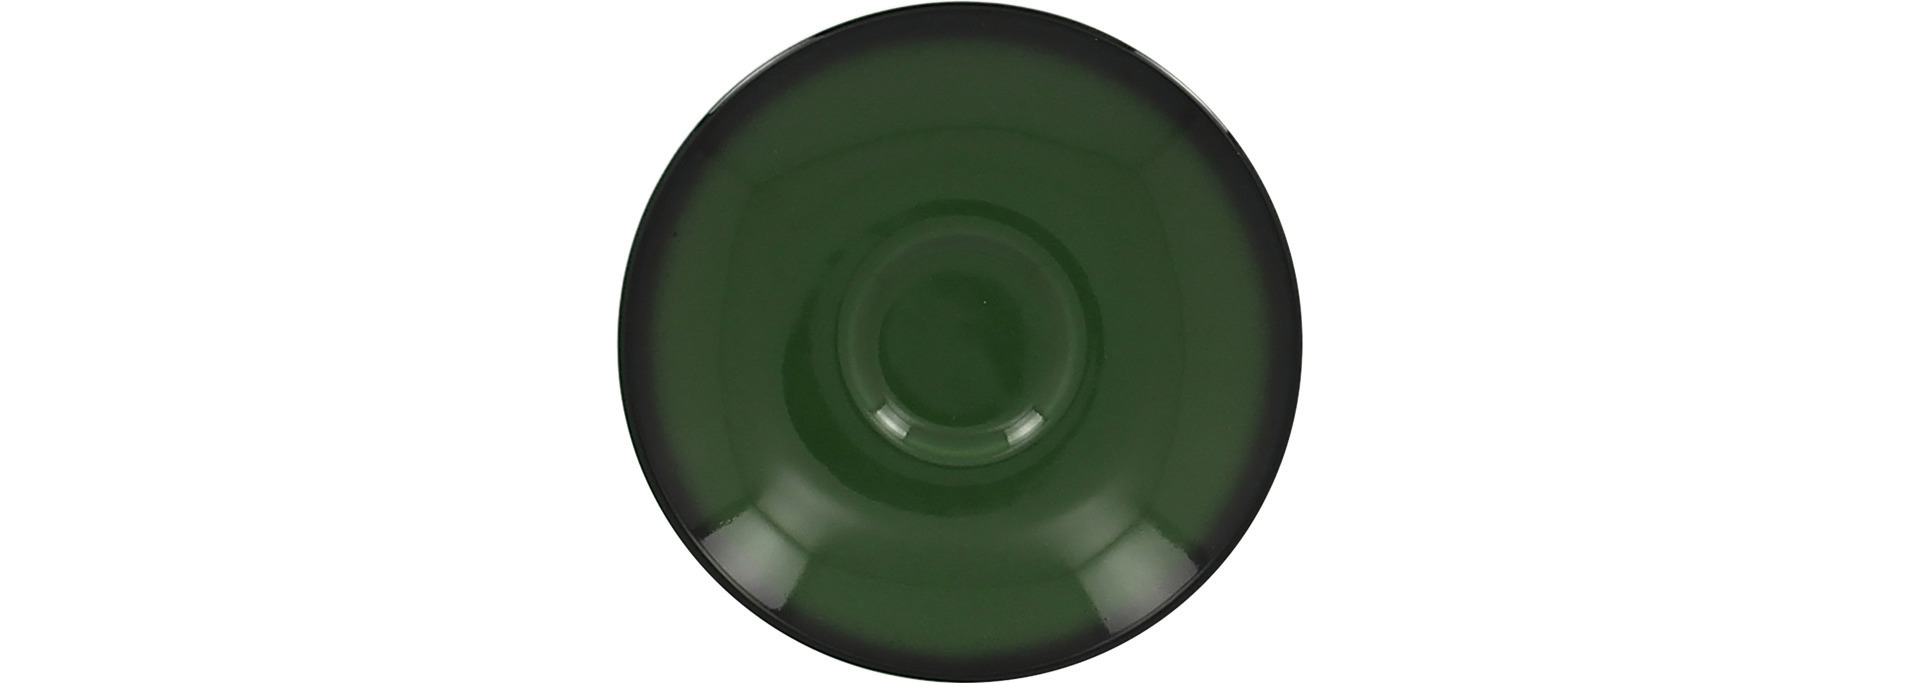 Untertasse 130 mm dunkelgrün für Espressotasse CLCU09